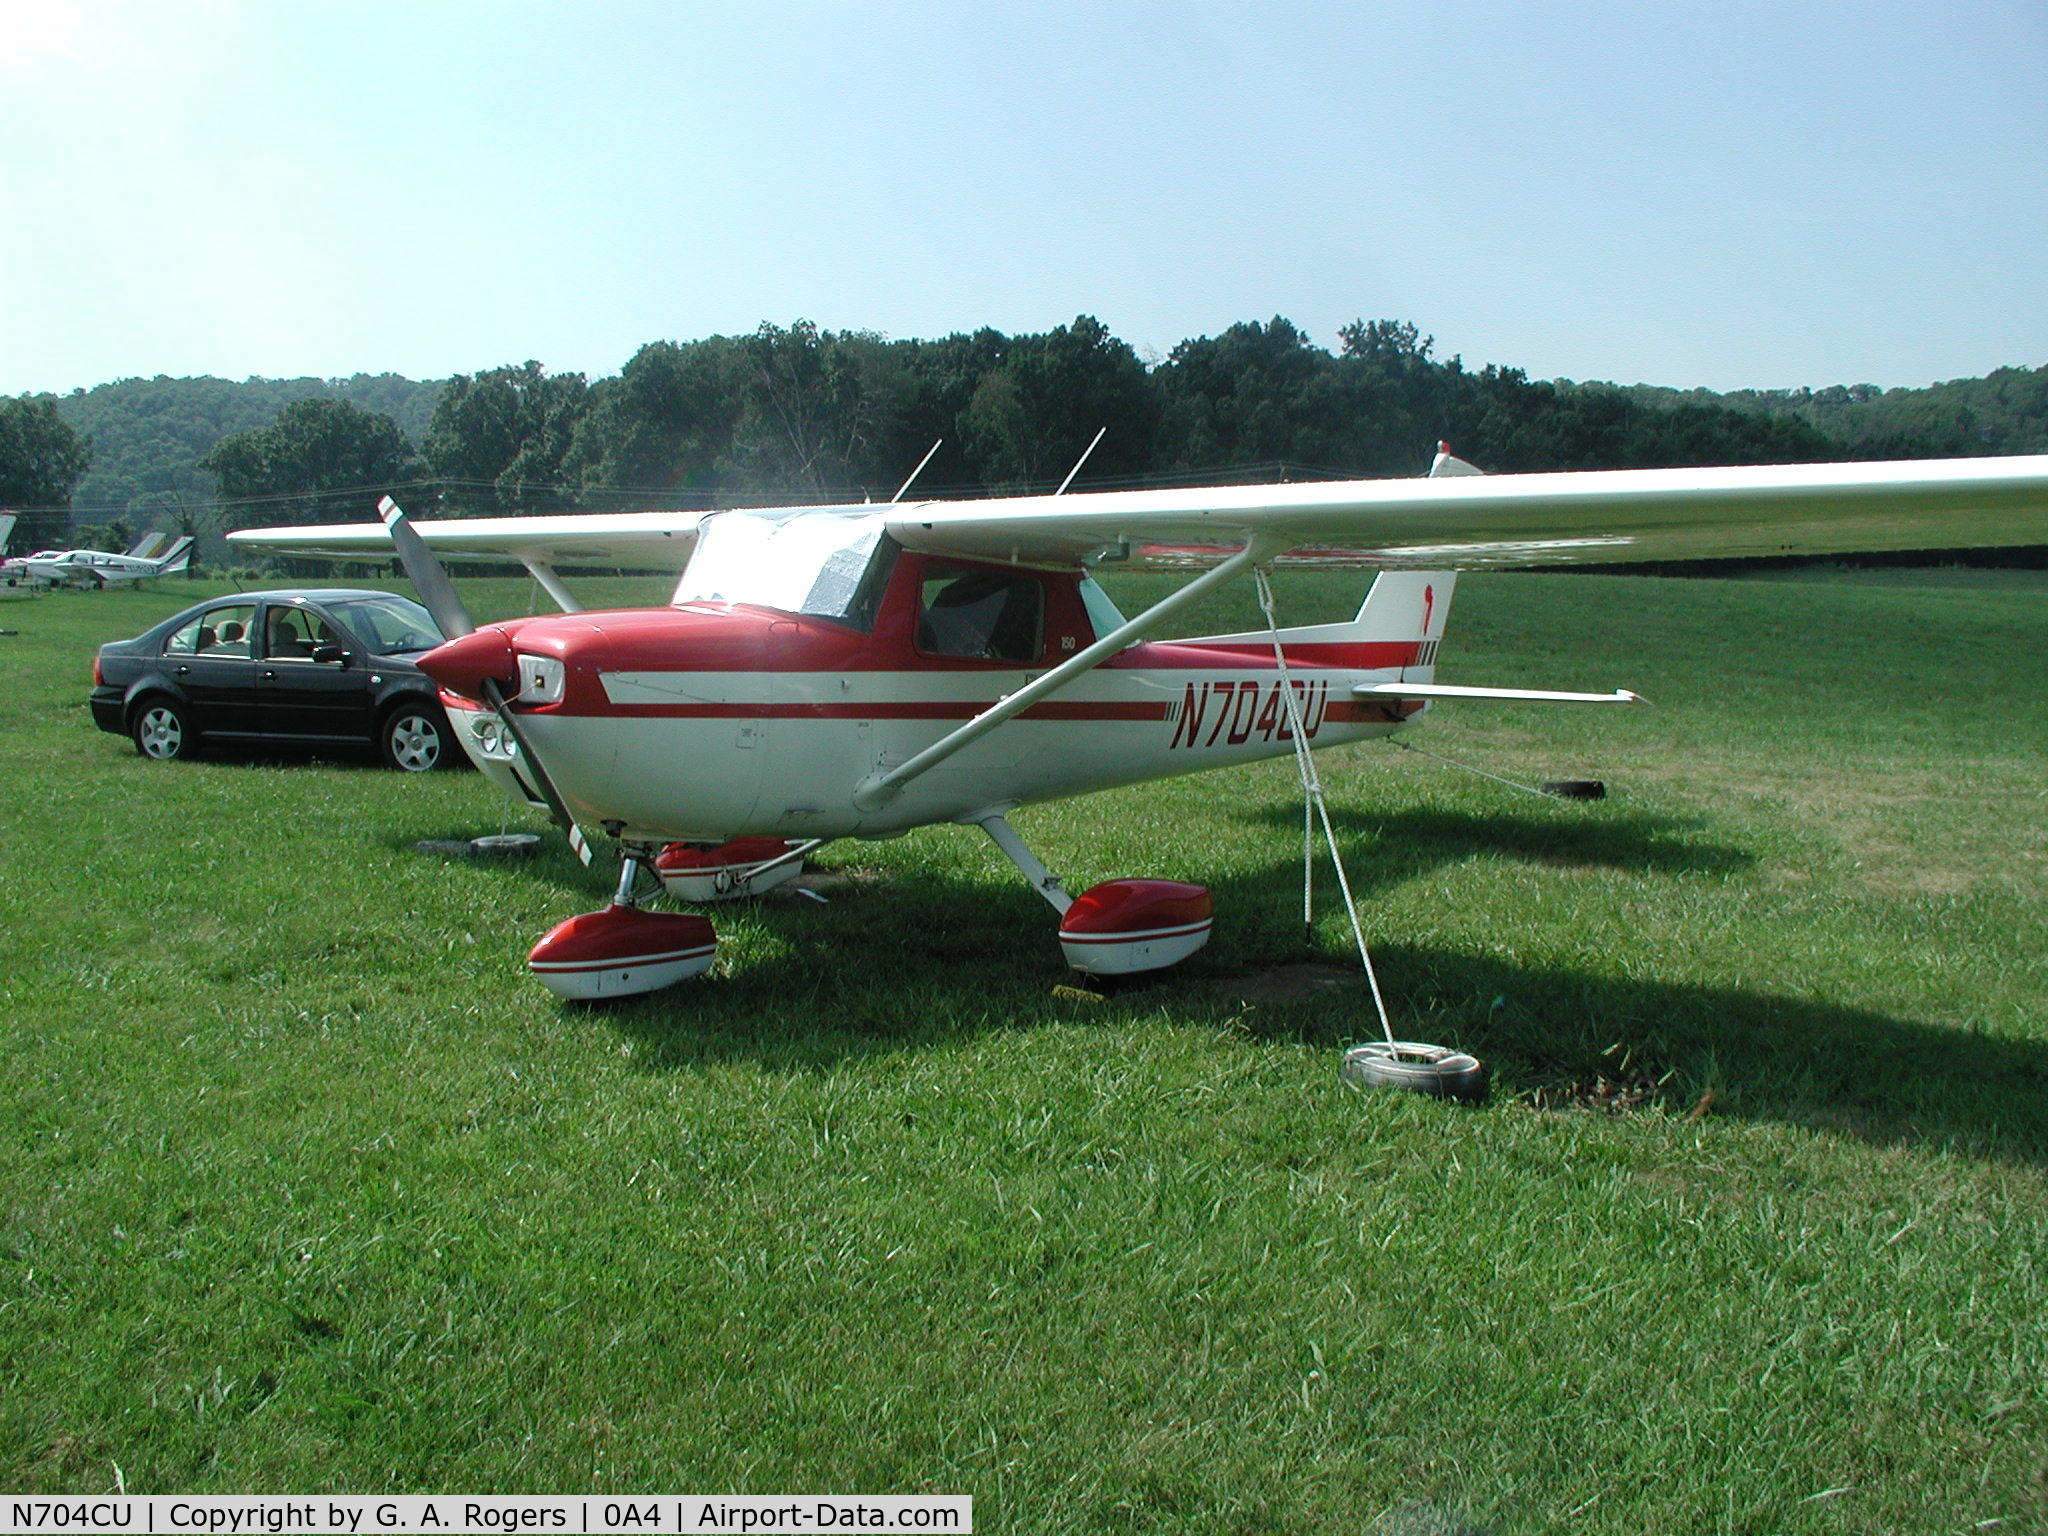 N704CU, 1976 Cessna 150M C/N 15078513, Four Charlie at Johnson City, TN